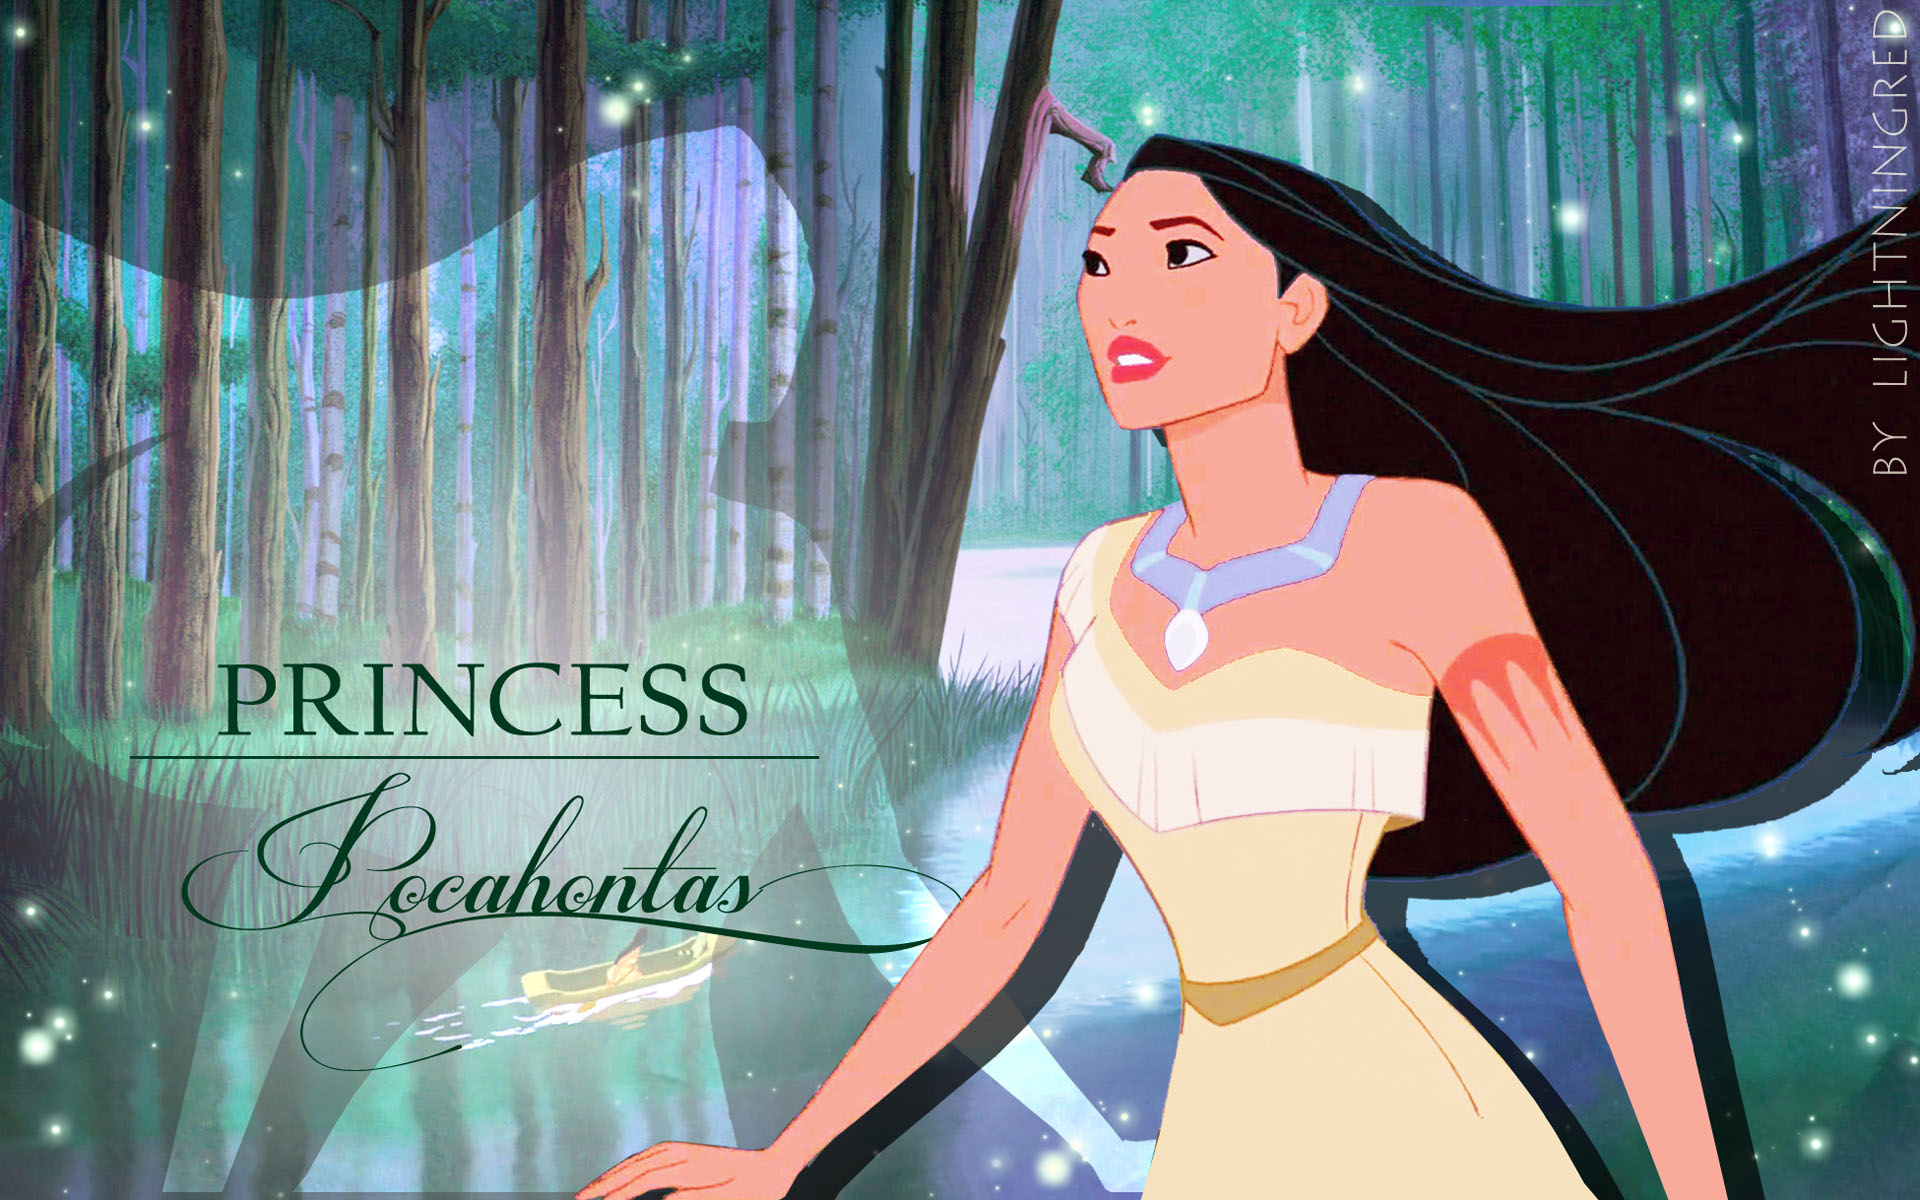 Disney Princess Princess Pocahontas